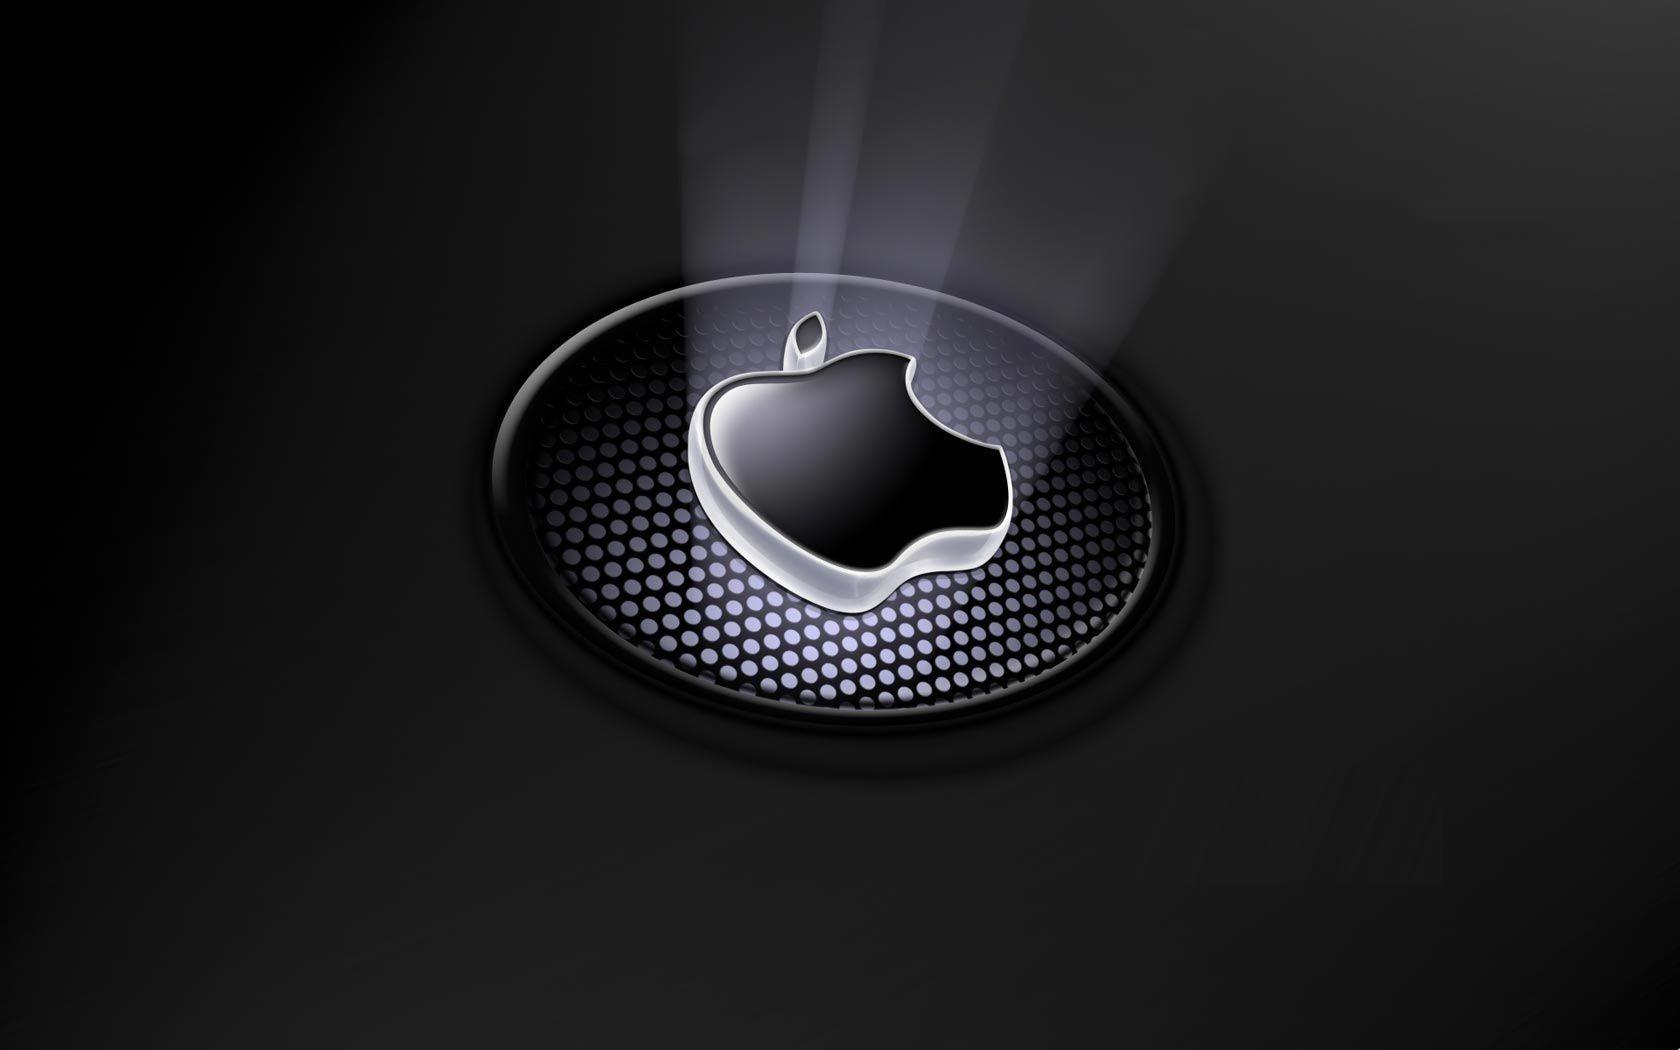 HD Apple Wallpaper. HD apple wallpaper, Apple logo wallpaper